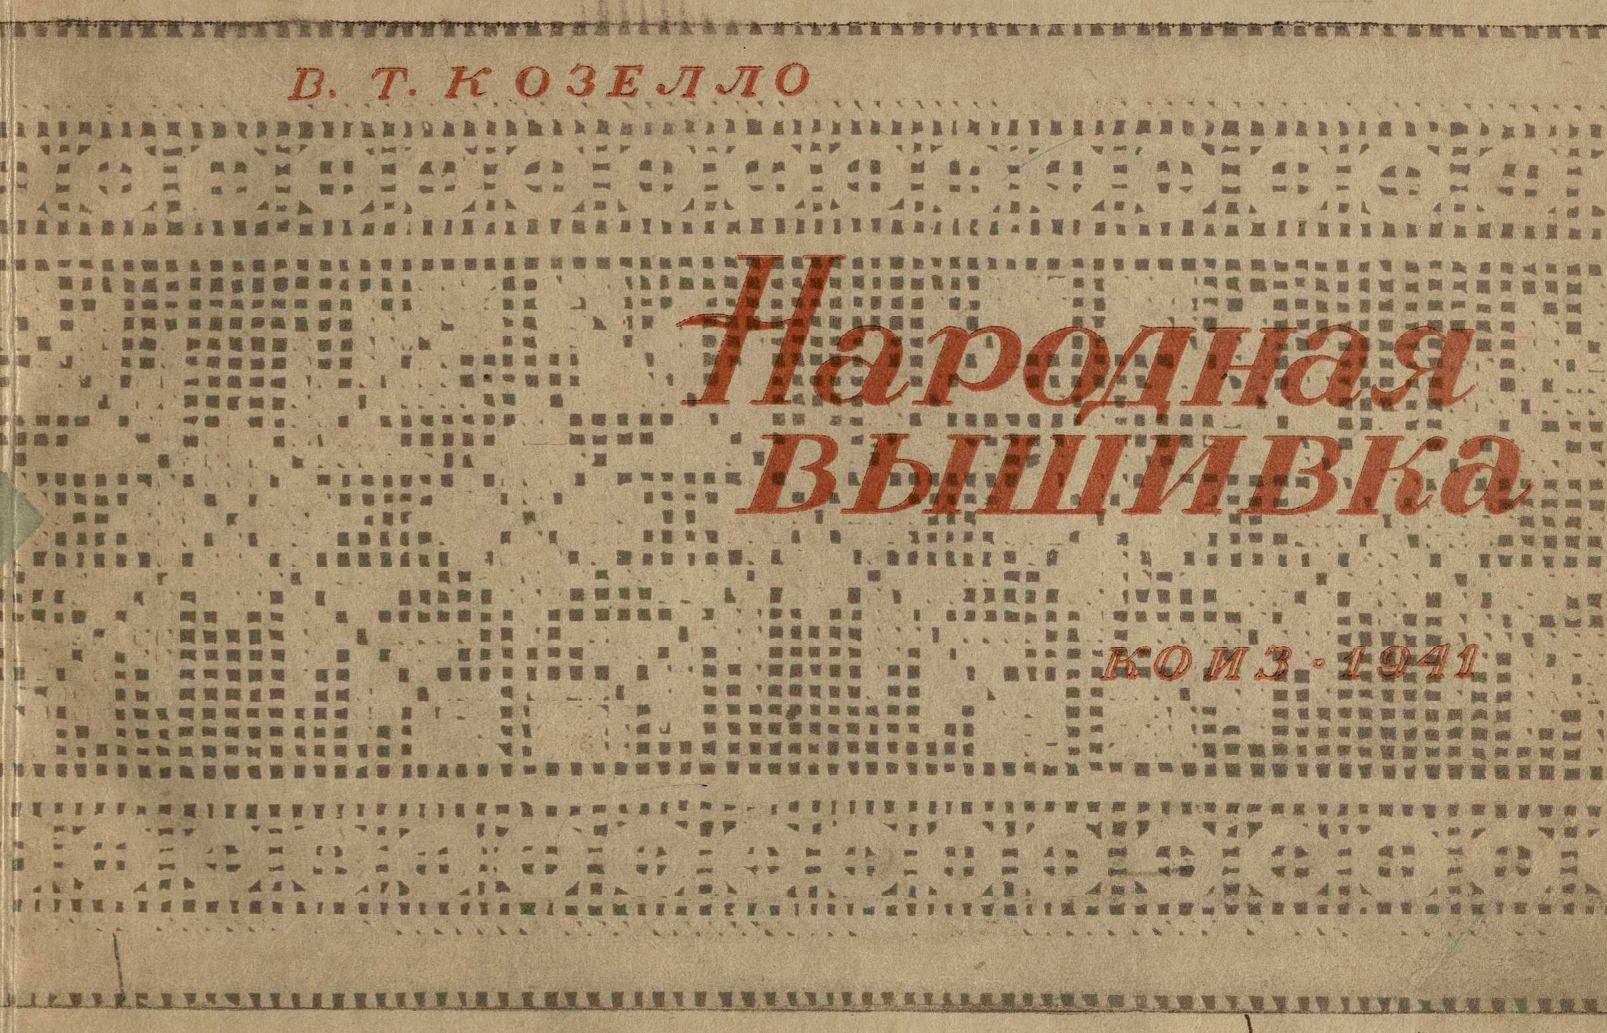 Народная вышивка : Строчка-перевить, бранье, набор, двухстороннее шитье / В. Т. Козелло. — Москва : КОИЗ, 1941